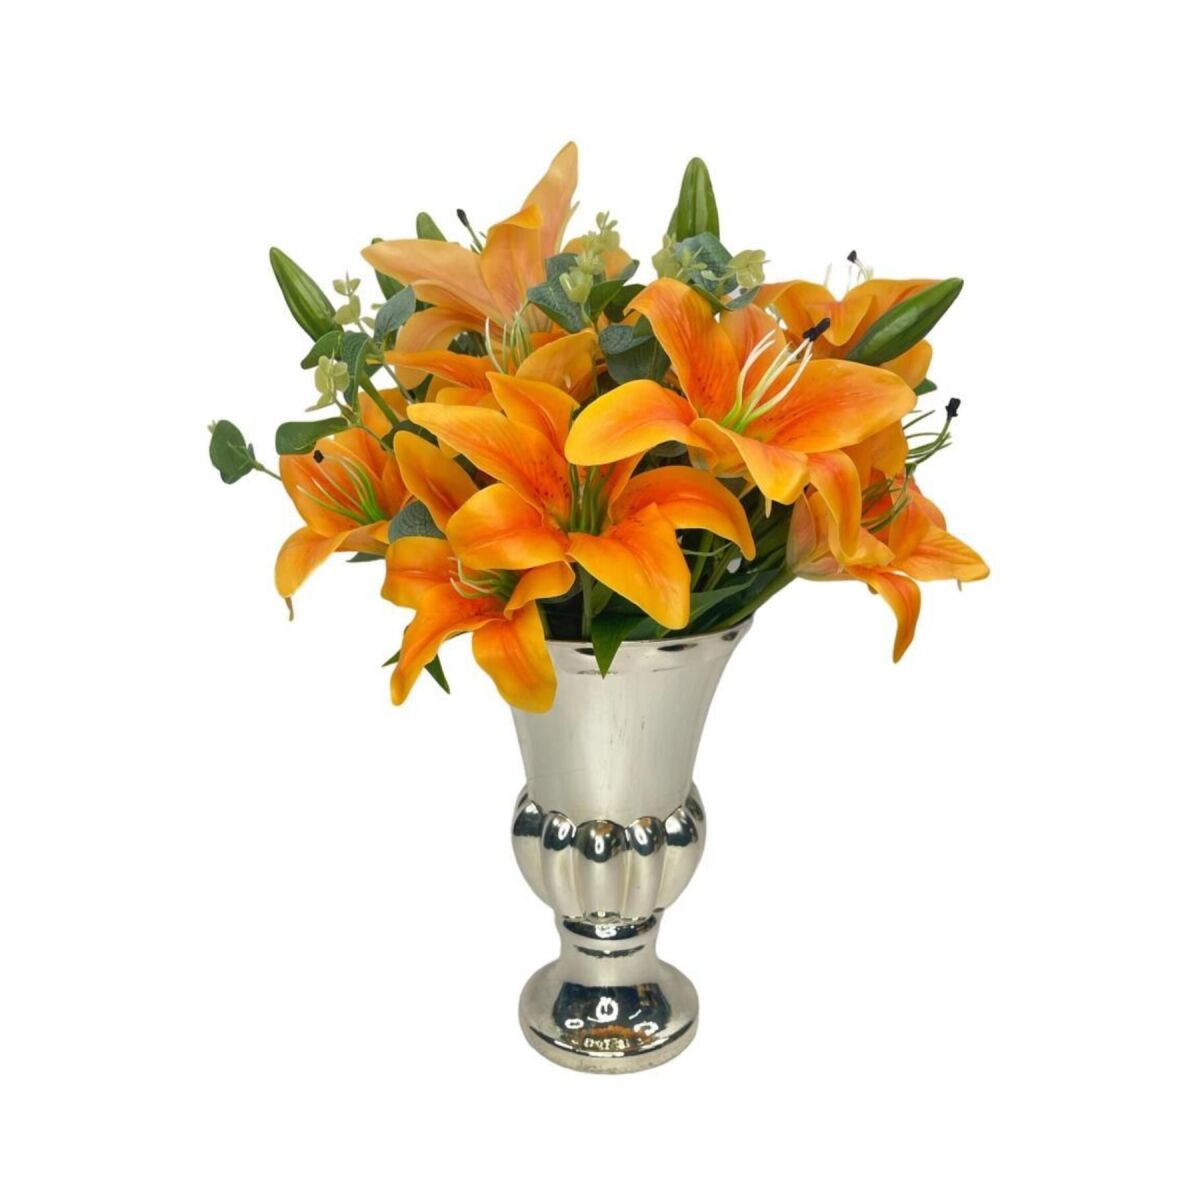 Yapay Çiçek Aranjmanı Somon Lilyum Gümüş Cam Kupa Vazoda Nişan Çiçeği İsteme Çiçeği